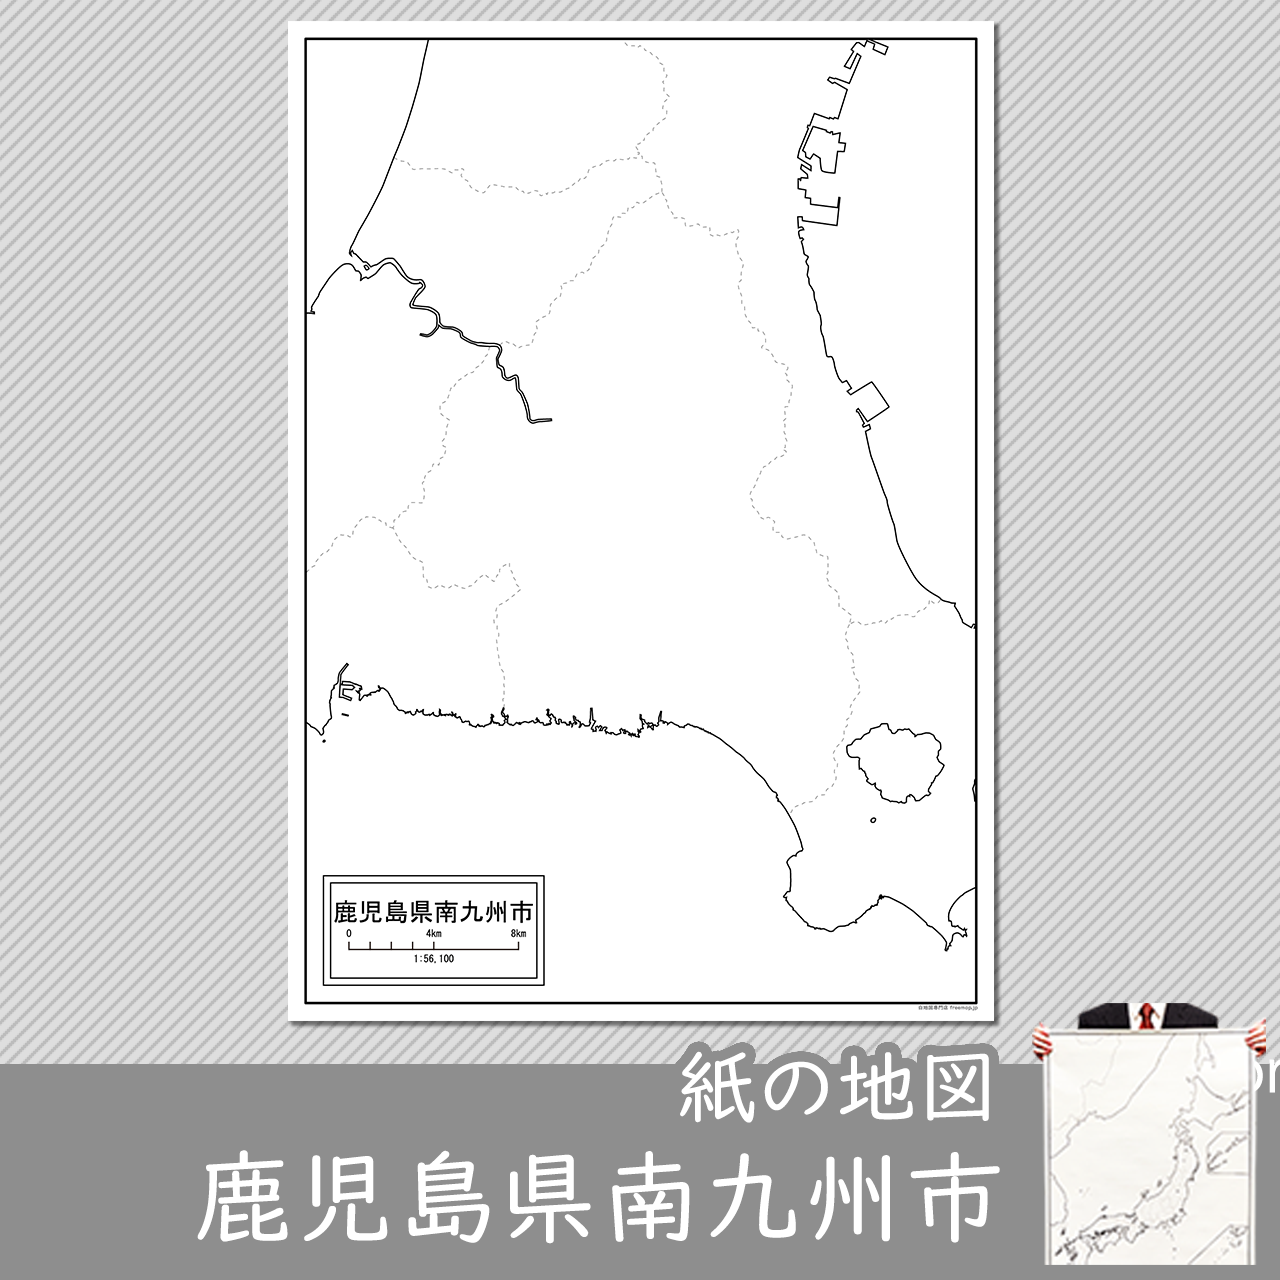 南九州市の紙の白地図のサムネイル